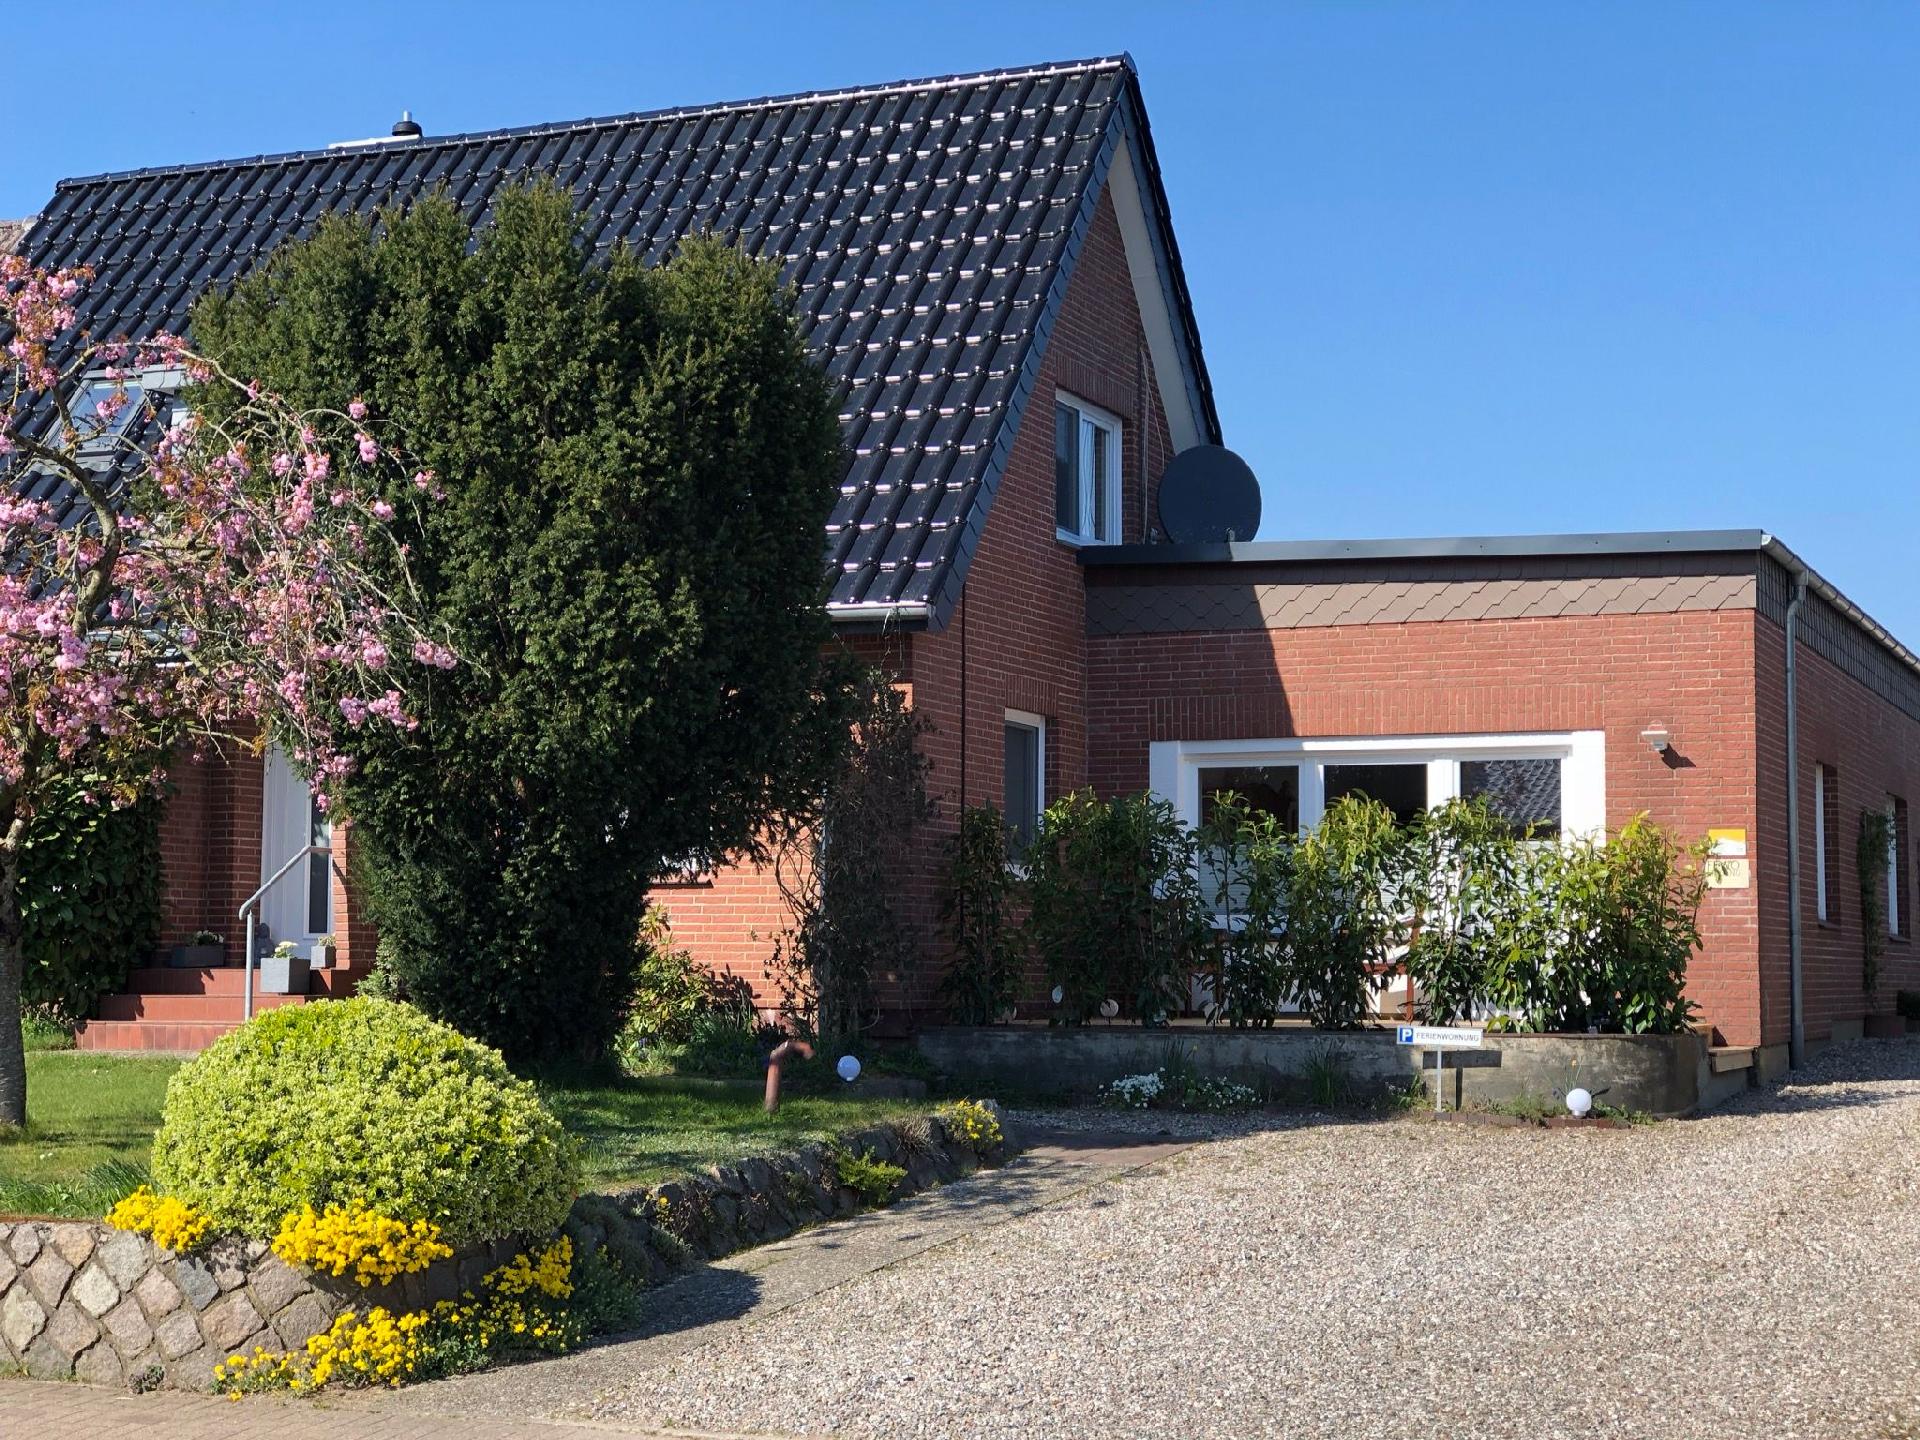 Gesamte Wohnung in Tolk mit Kleiner Terrasse Ferienhaus  Binnenland Schleswig Holstein